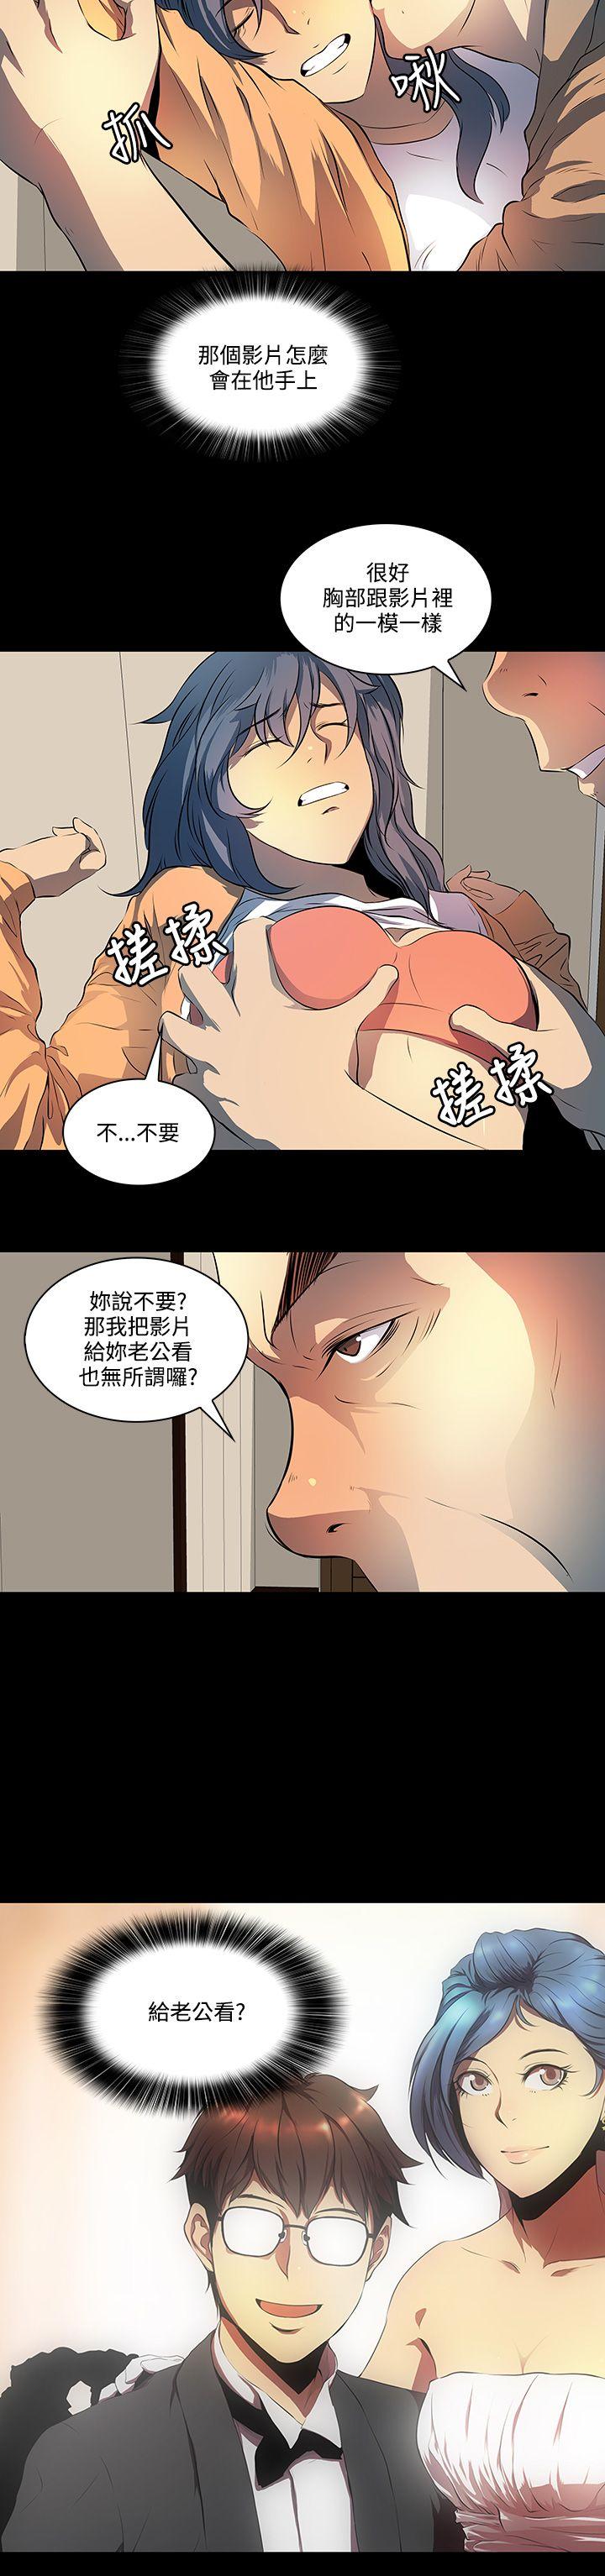 韩国污漫画 人妻的秘密 第7话 20